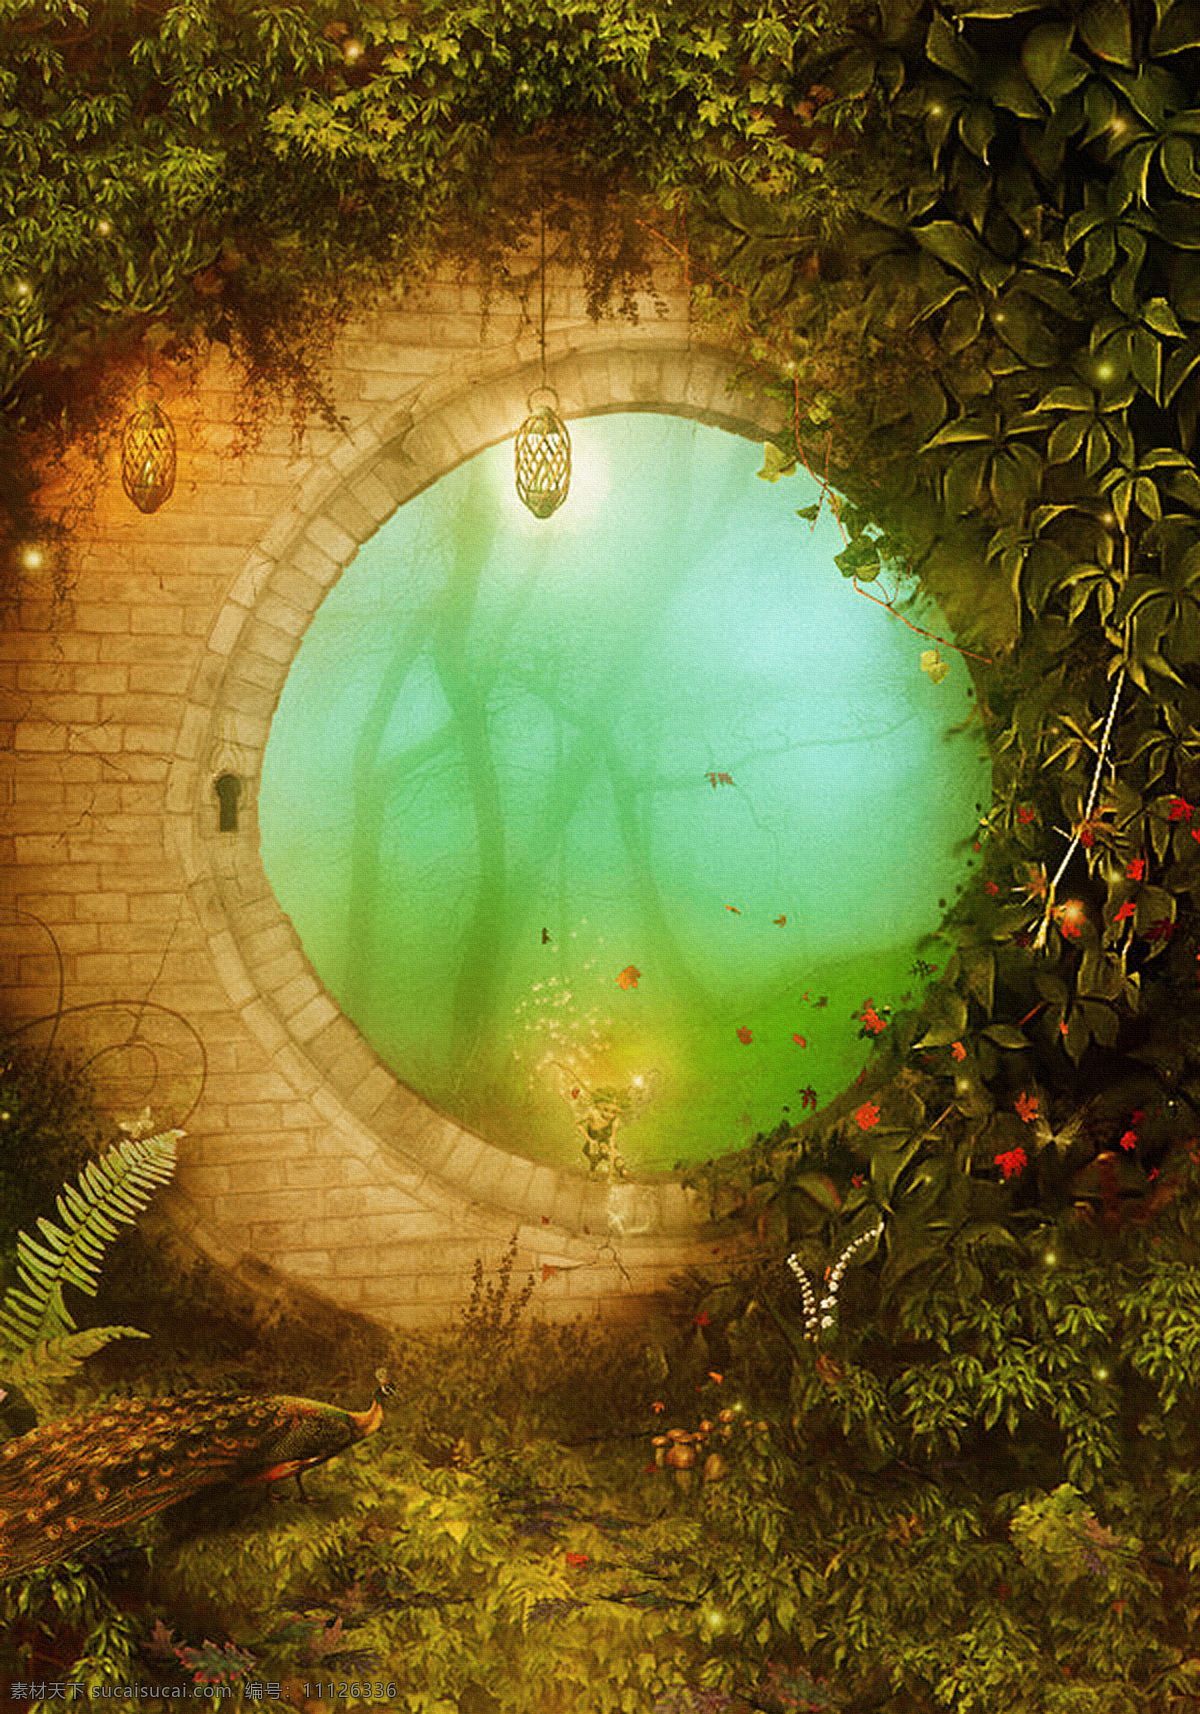 梦幻 自然 童话 唯美 大自然 森林 草地 朦胧 藤蔓 窗户 吊灯 山水风景 风景图片